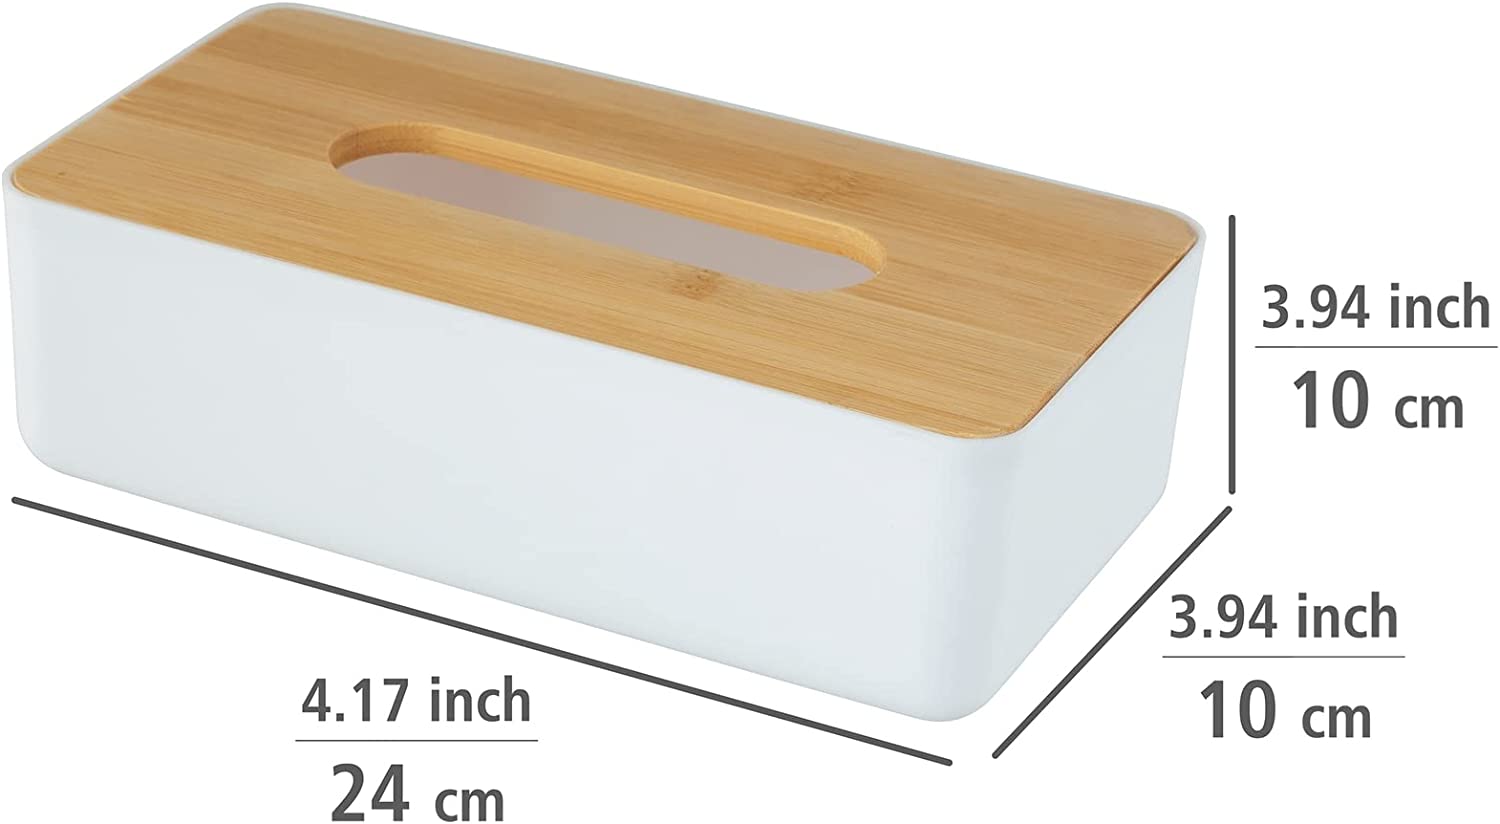 Kosmetiktuchbox Rotello, Box für Kosmetiktücher oder Taschentücher, Kunststoffbox mit Deckel aus Bambus, leichte Entnahme, zum Verstauen handelsüblicher Pappboxen, 24 x 7,5 x 12,7 cm, Weiß/Natur